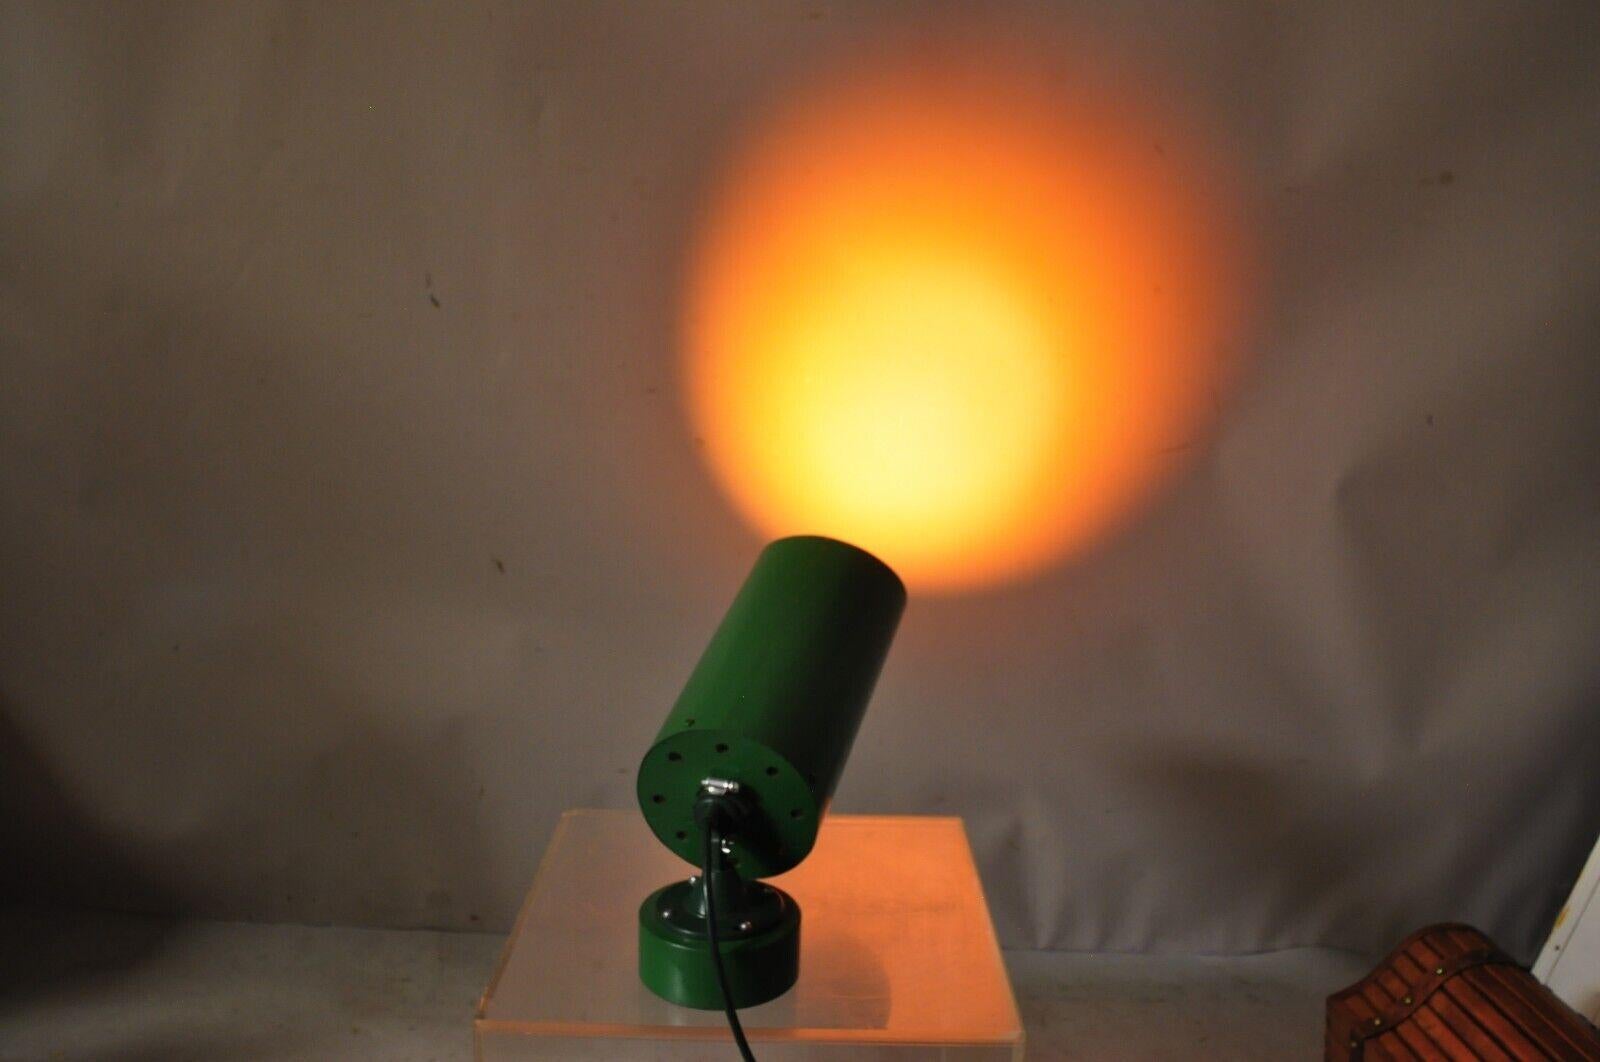 Lampe moderne à spot réglable en métal vert en acier Theater Production. Cet article est doté d'une base ronde lestée, d'une tige cylindrique, d'une forme réglable/pivotante, d'une finition peinte en vert, idéal pour éclairer une présentation ou une